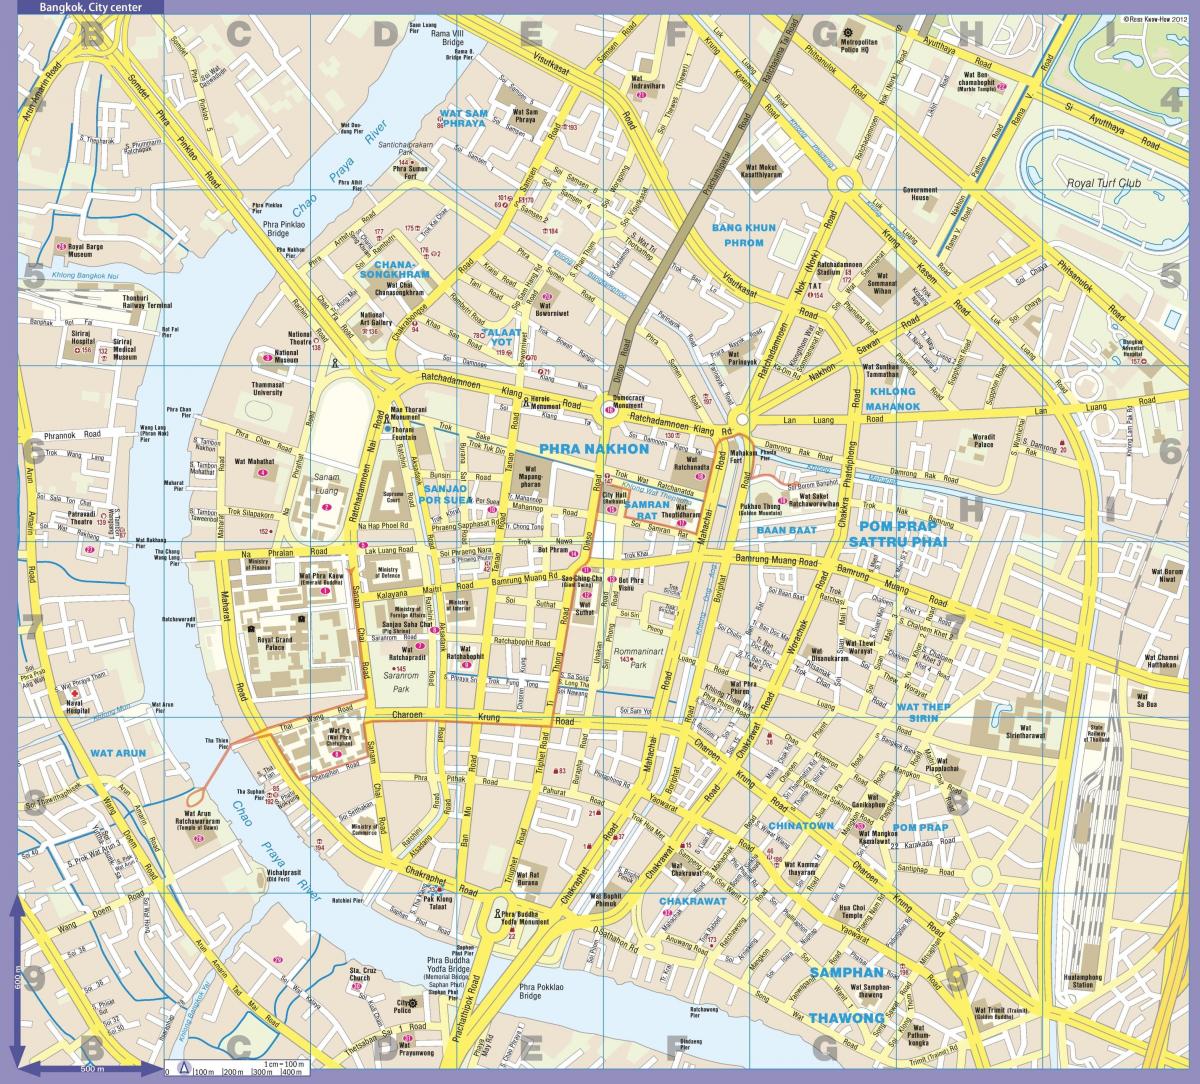 Plan du centre ville de Bangkok (Krung Thep)